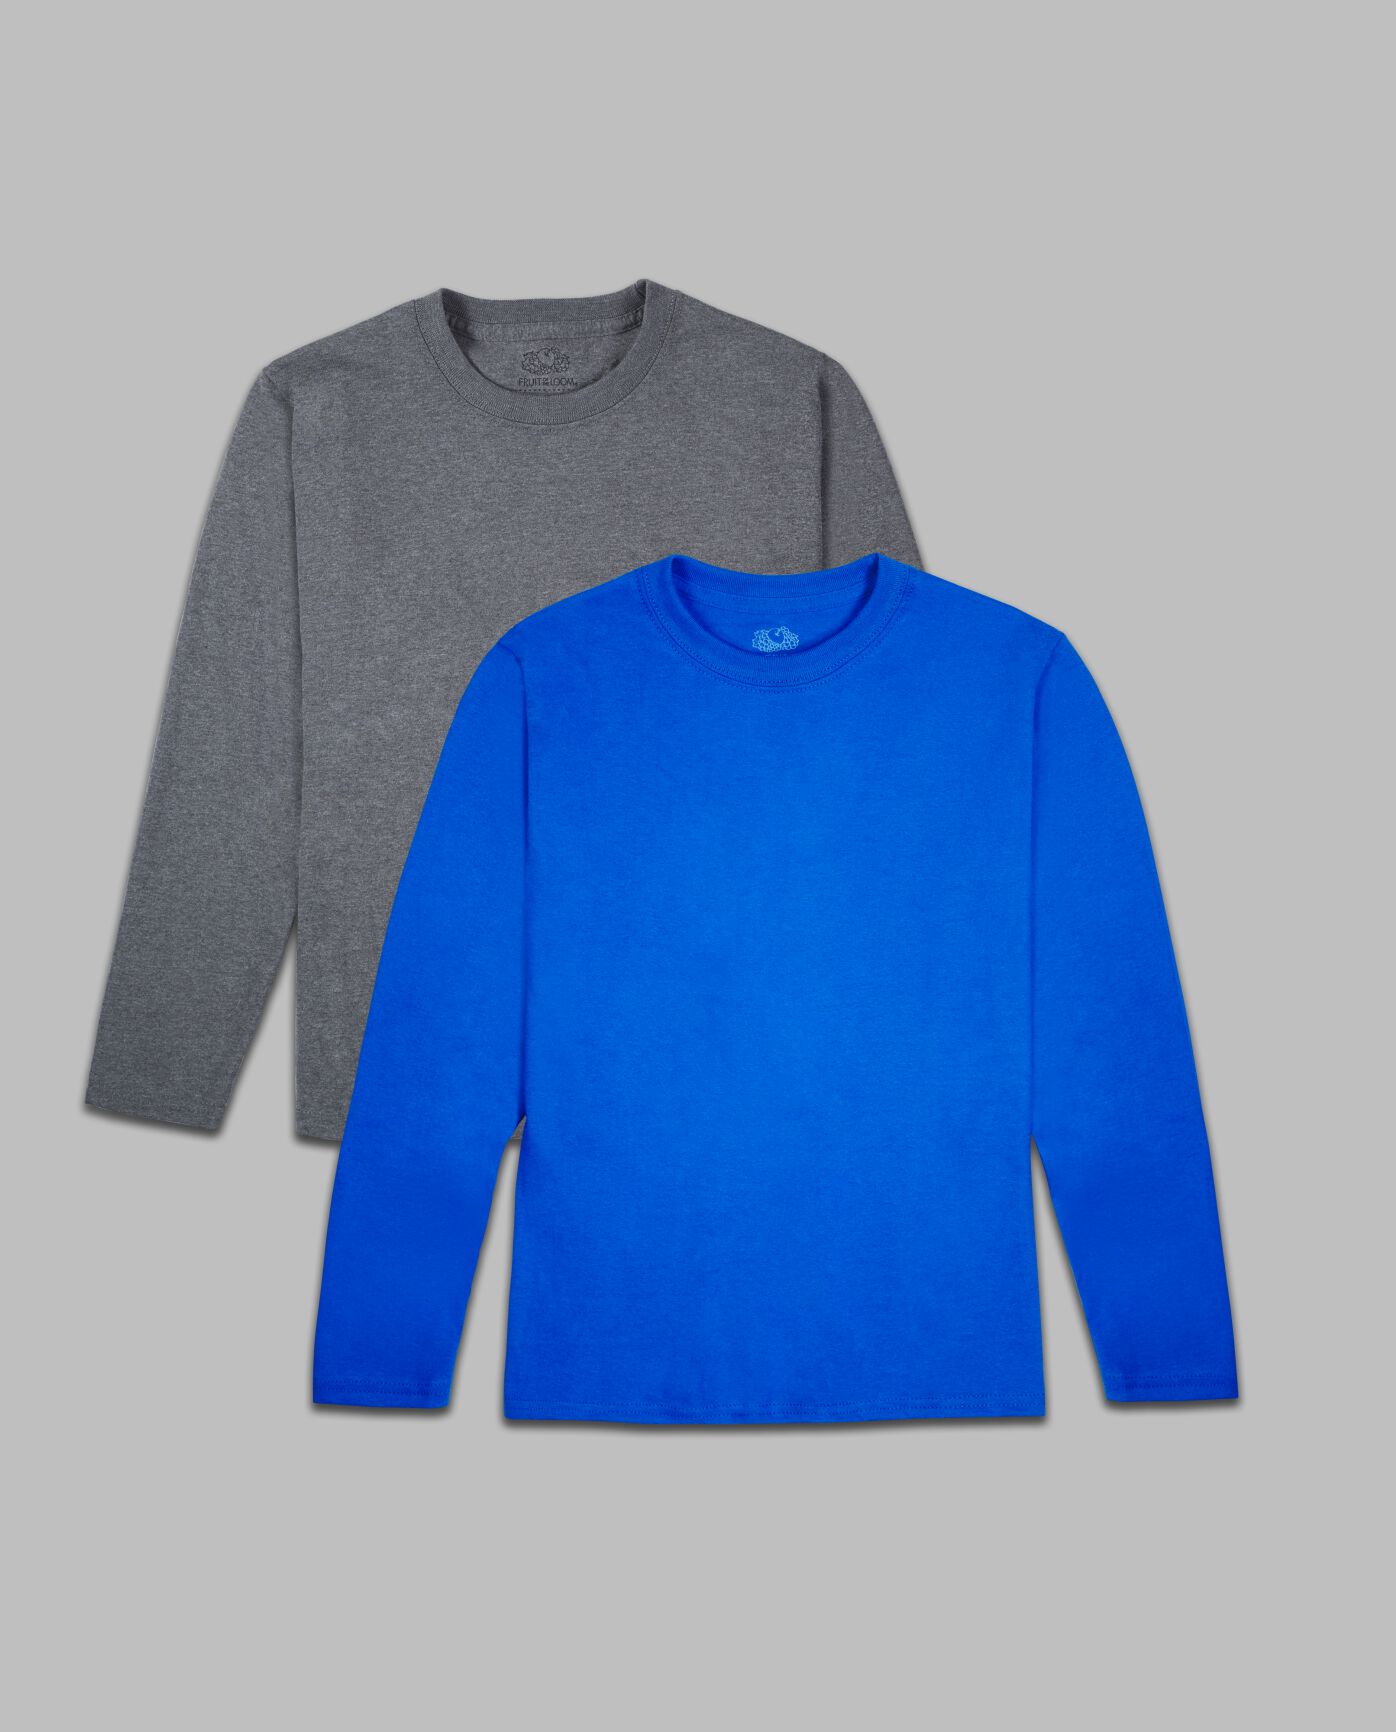 ser godt ud bind cabriolet Boys' Super Soft Solid Multi-Color Long Sleeve T-Shirts